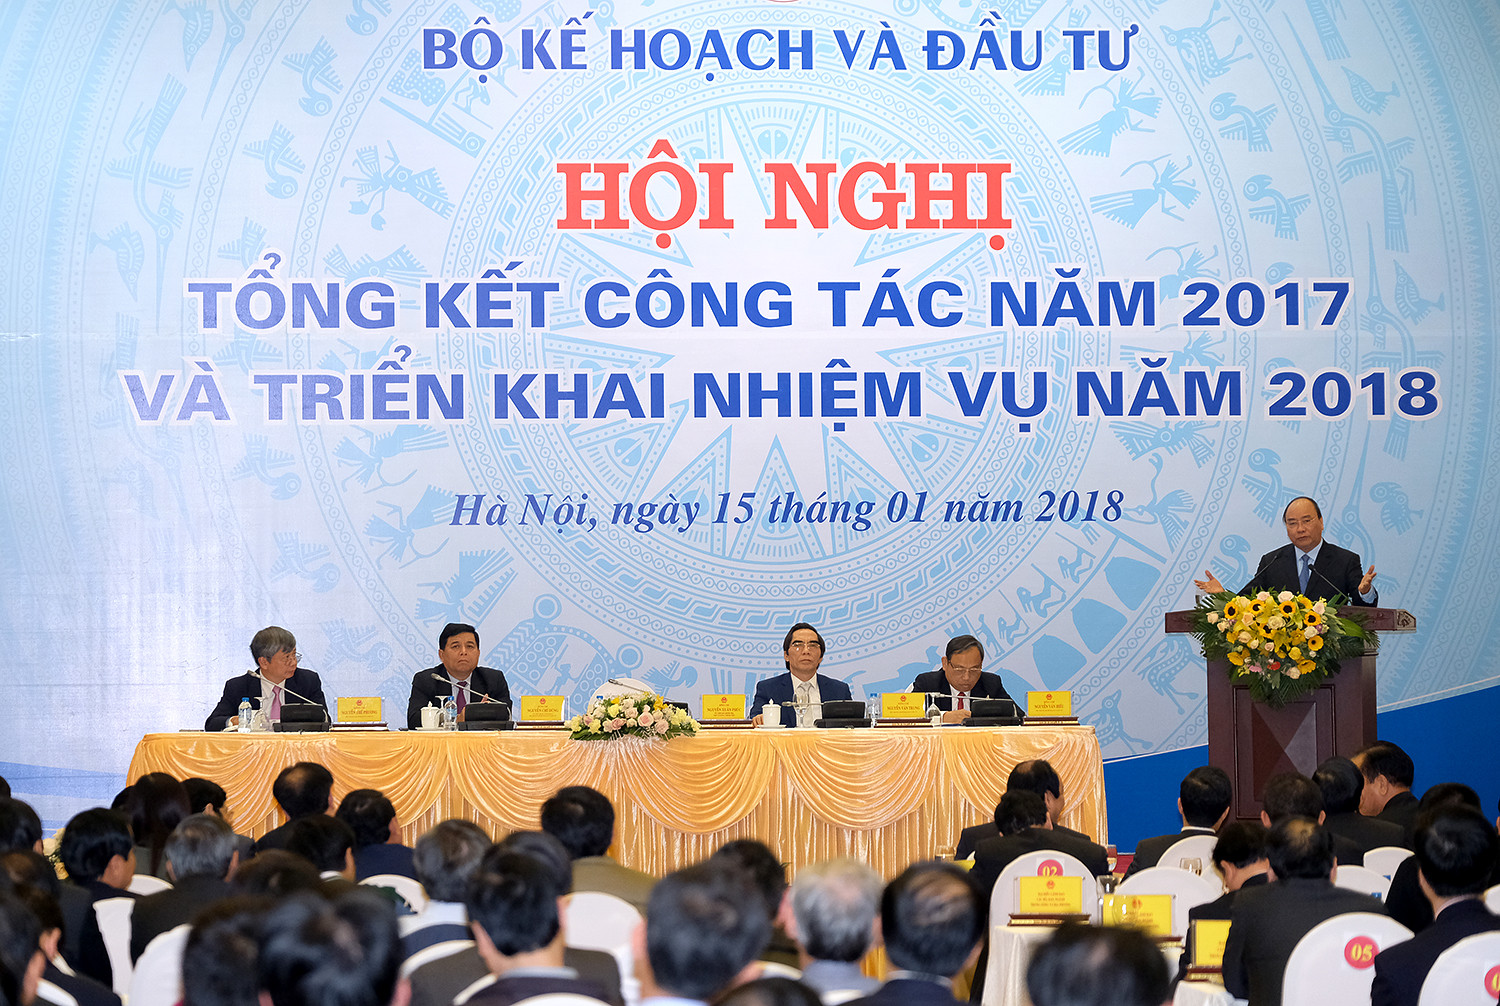 Thủ tướng Nguyễn Xuân Phúc dự Hội nghị triển khai nhiệm vụ năm 2018 của Bộ Kế hoạch và Đầu tư